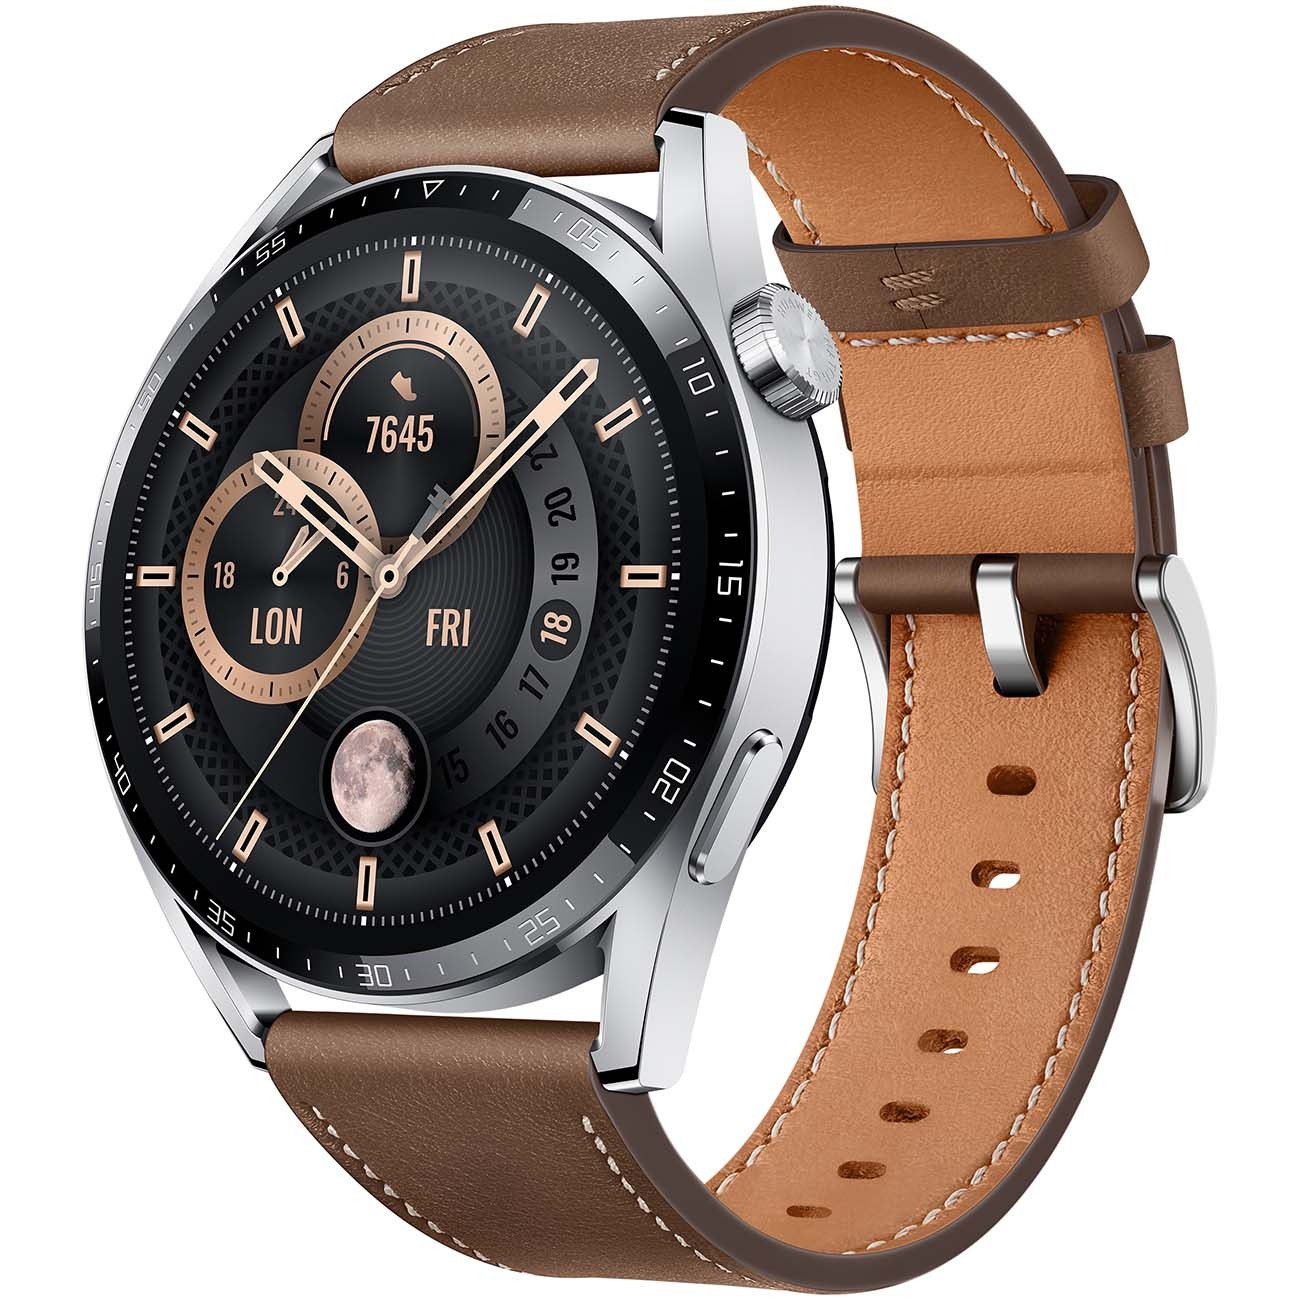 Смарт часы Huawei watch gt 3 brown leather strap (jupiter-b29v) watch gt 3 brown leather strap (jupiter-b29v) - фото 1